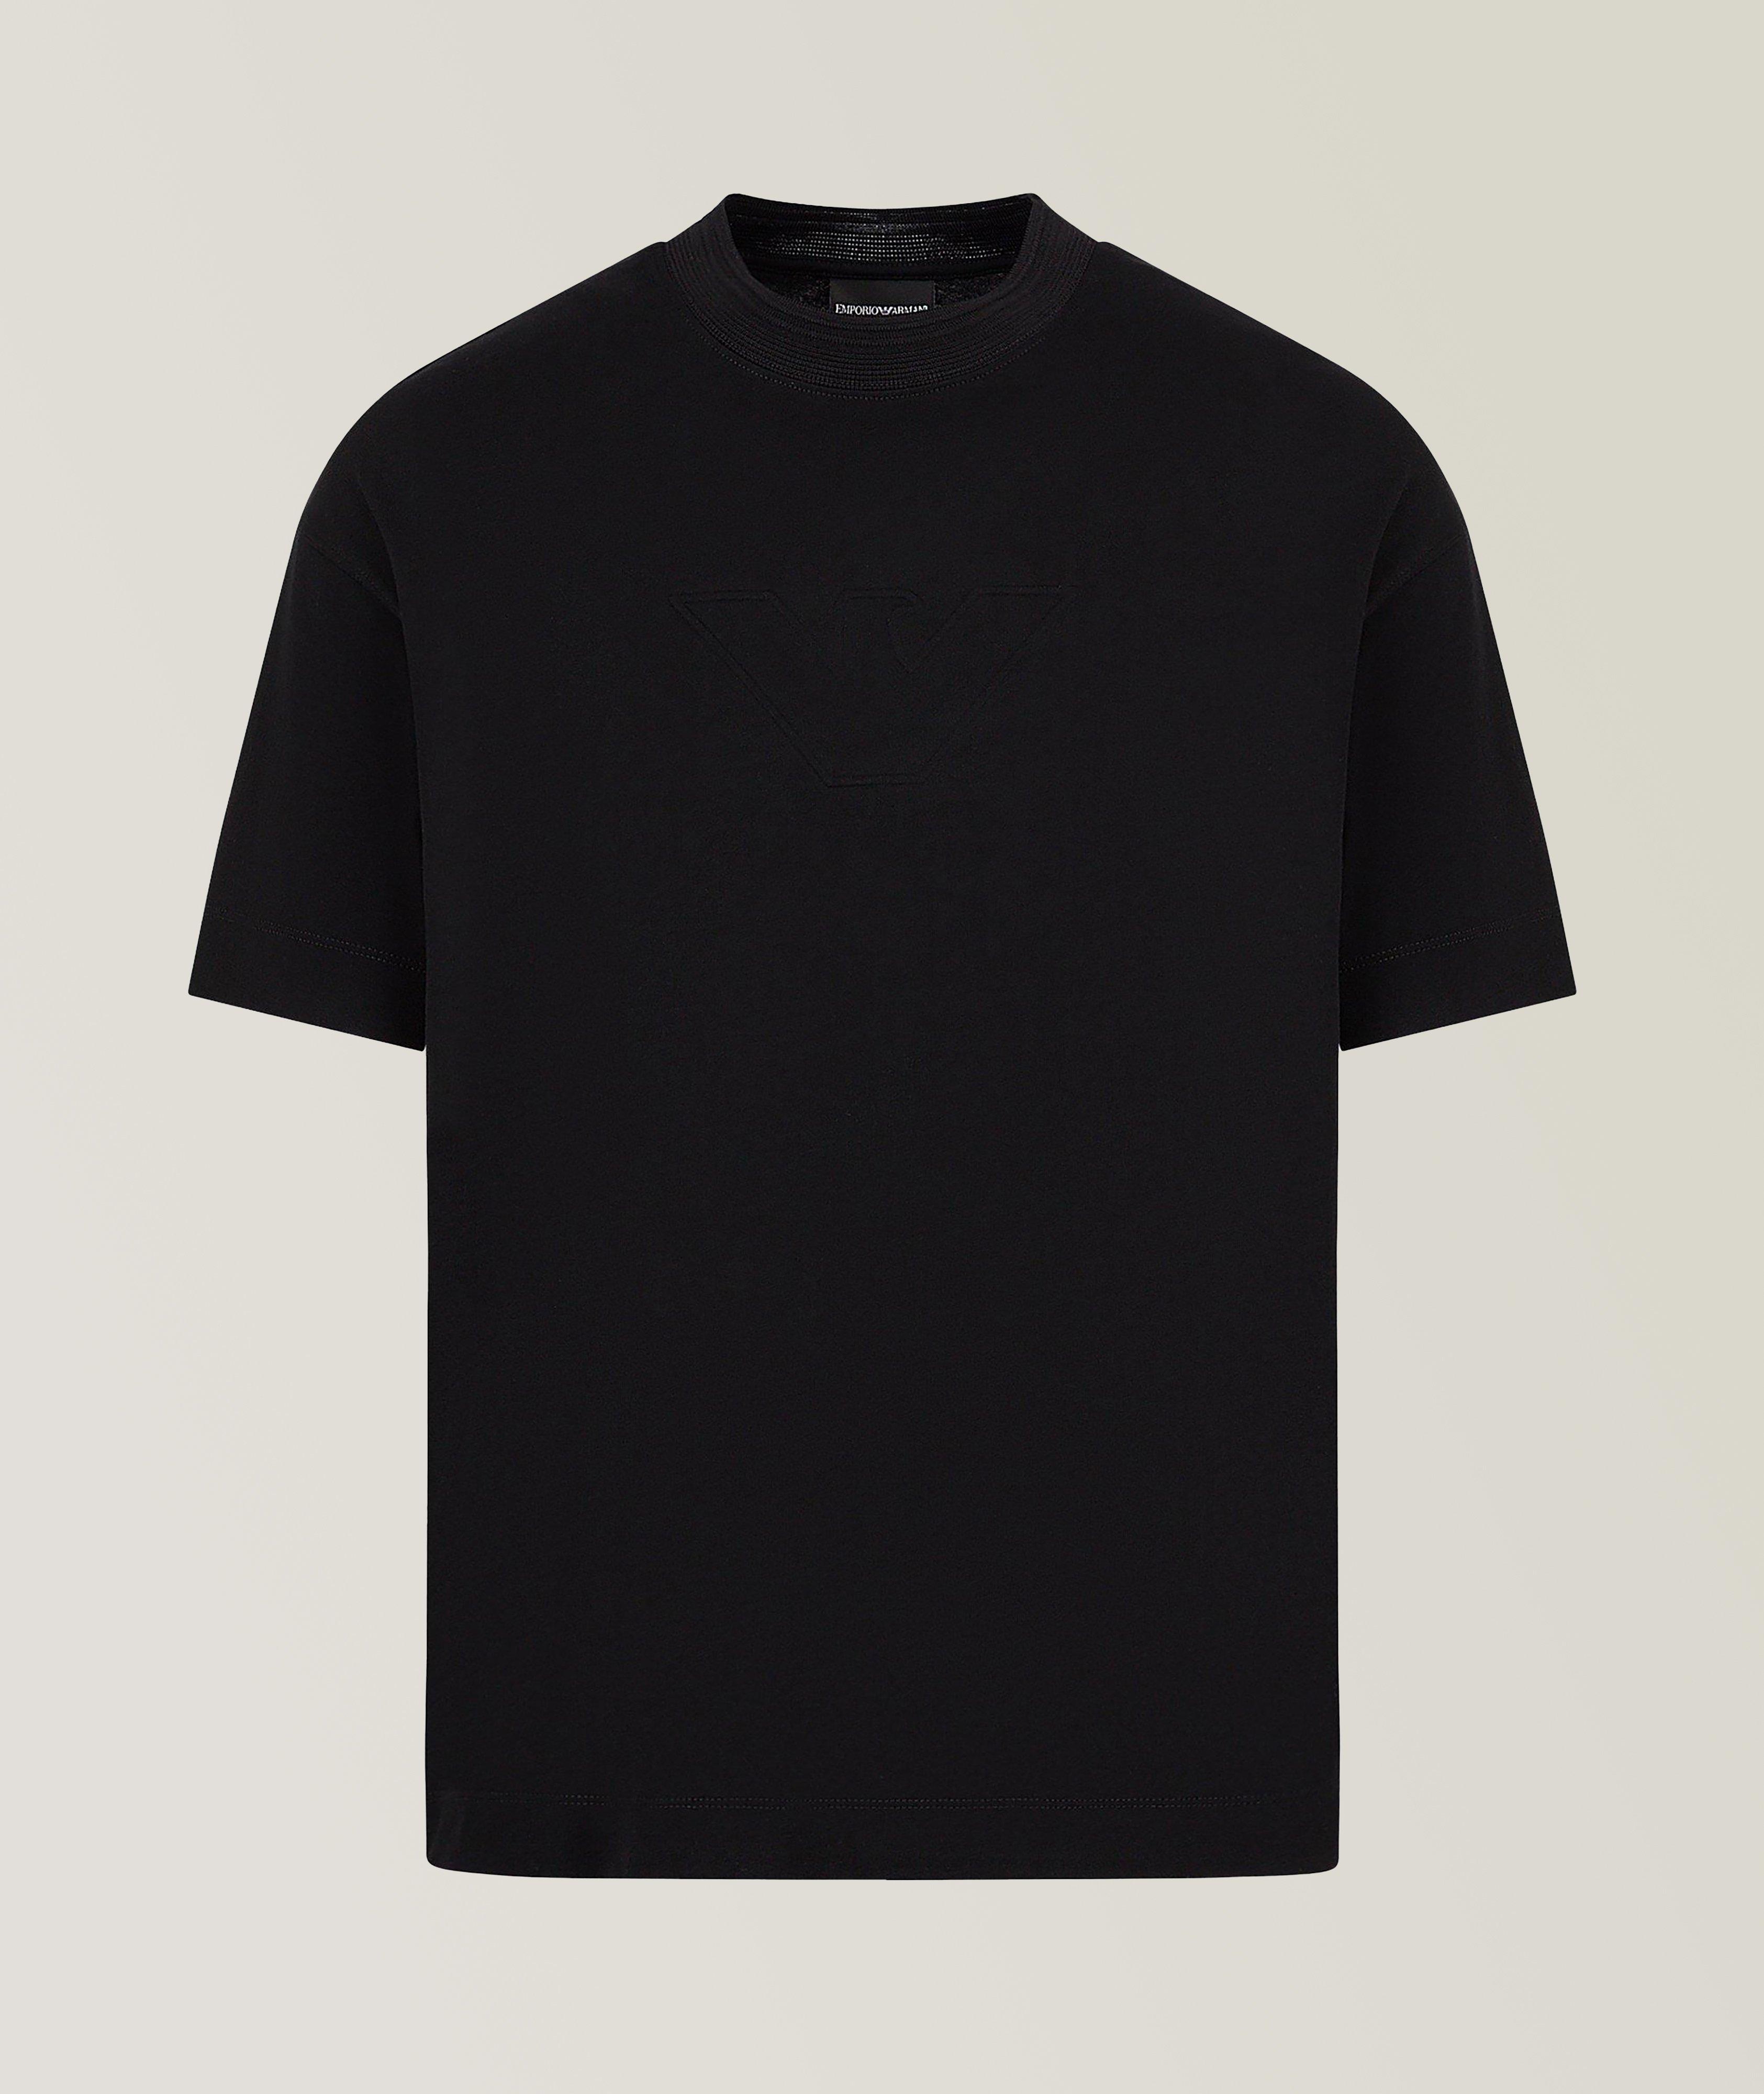 Tonal Embossed Logo Jersey Cotton T-Shirt image 0